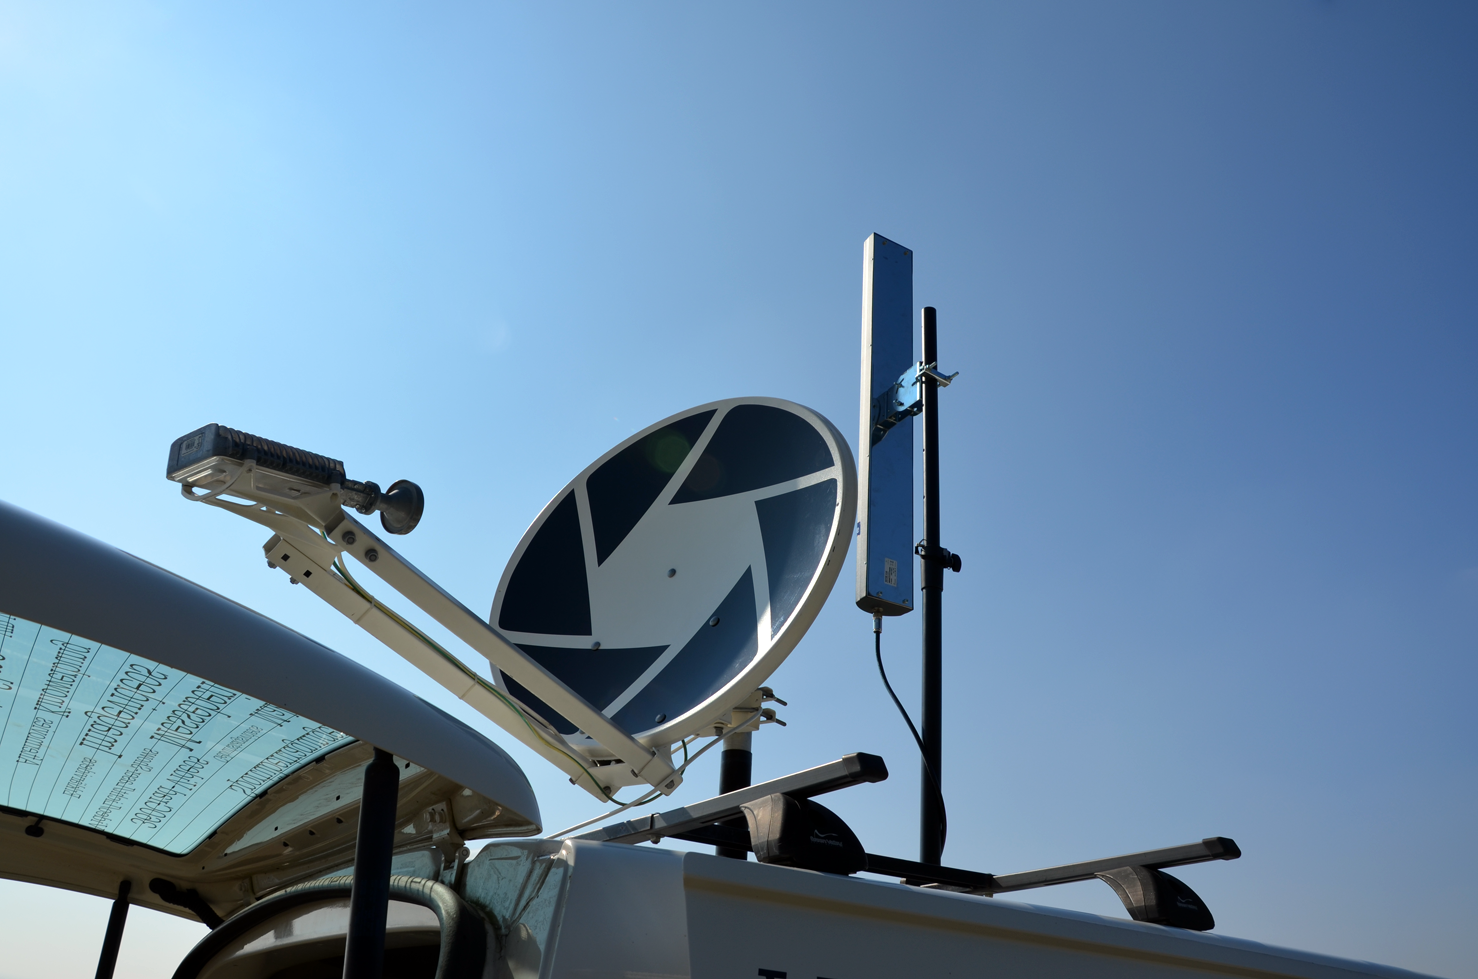 SAT-Aufbau und WLAN-Antenne für 2,4Ghz & 5Ghz Ausstrahlung.